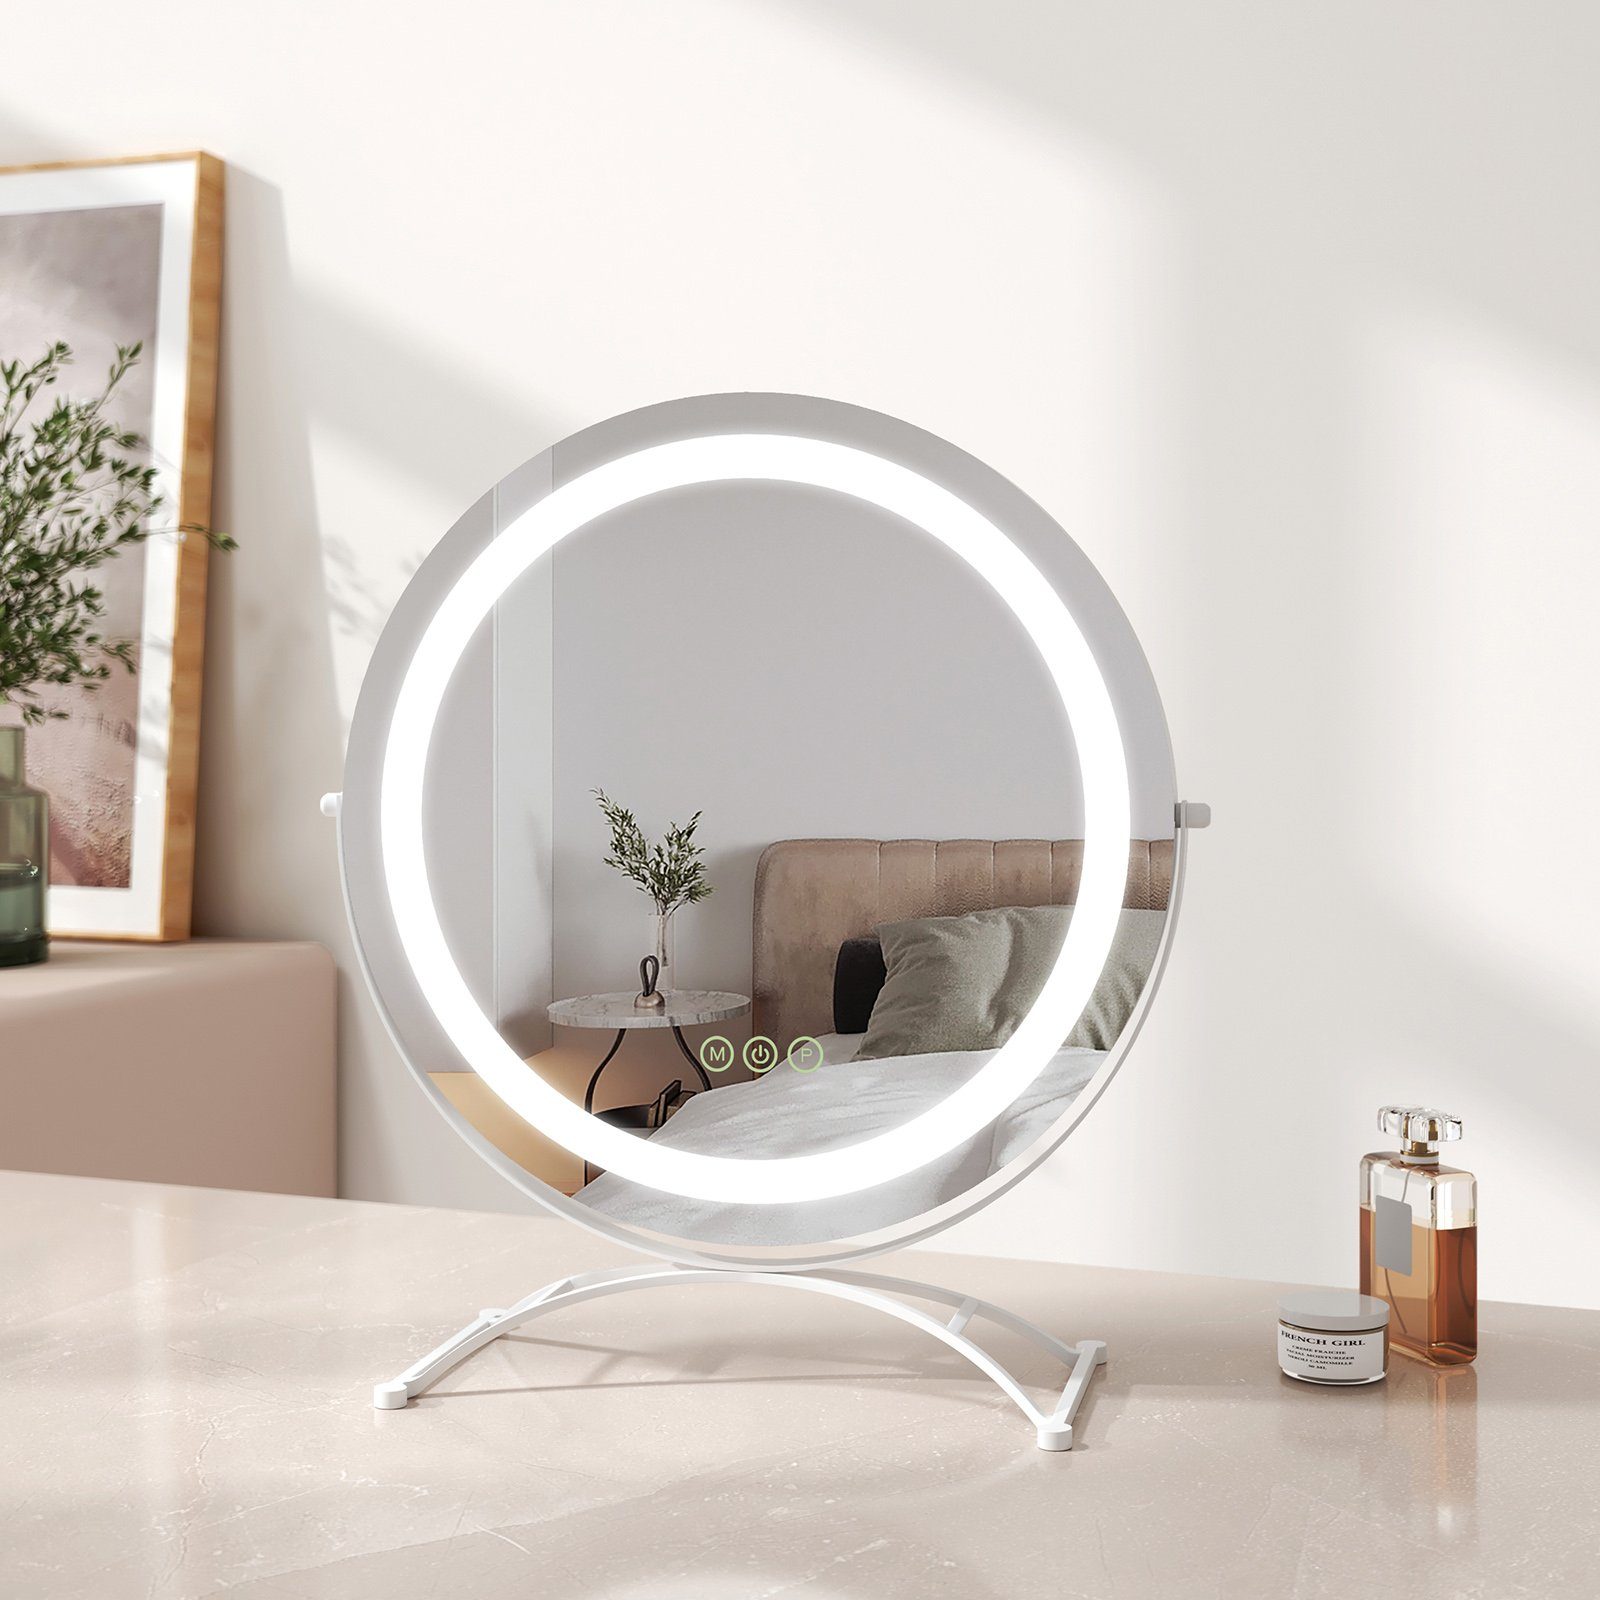 EMKE Schminkspiegel Schminkspiegel LED Runder Kosmetikspiegel Tischspiegel mit Beleuchtung, mit Touch, 3 Lichtfarben Dimmbar, Memory-Funktion, 360° Drehbar Weiß